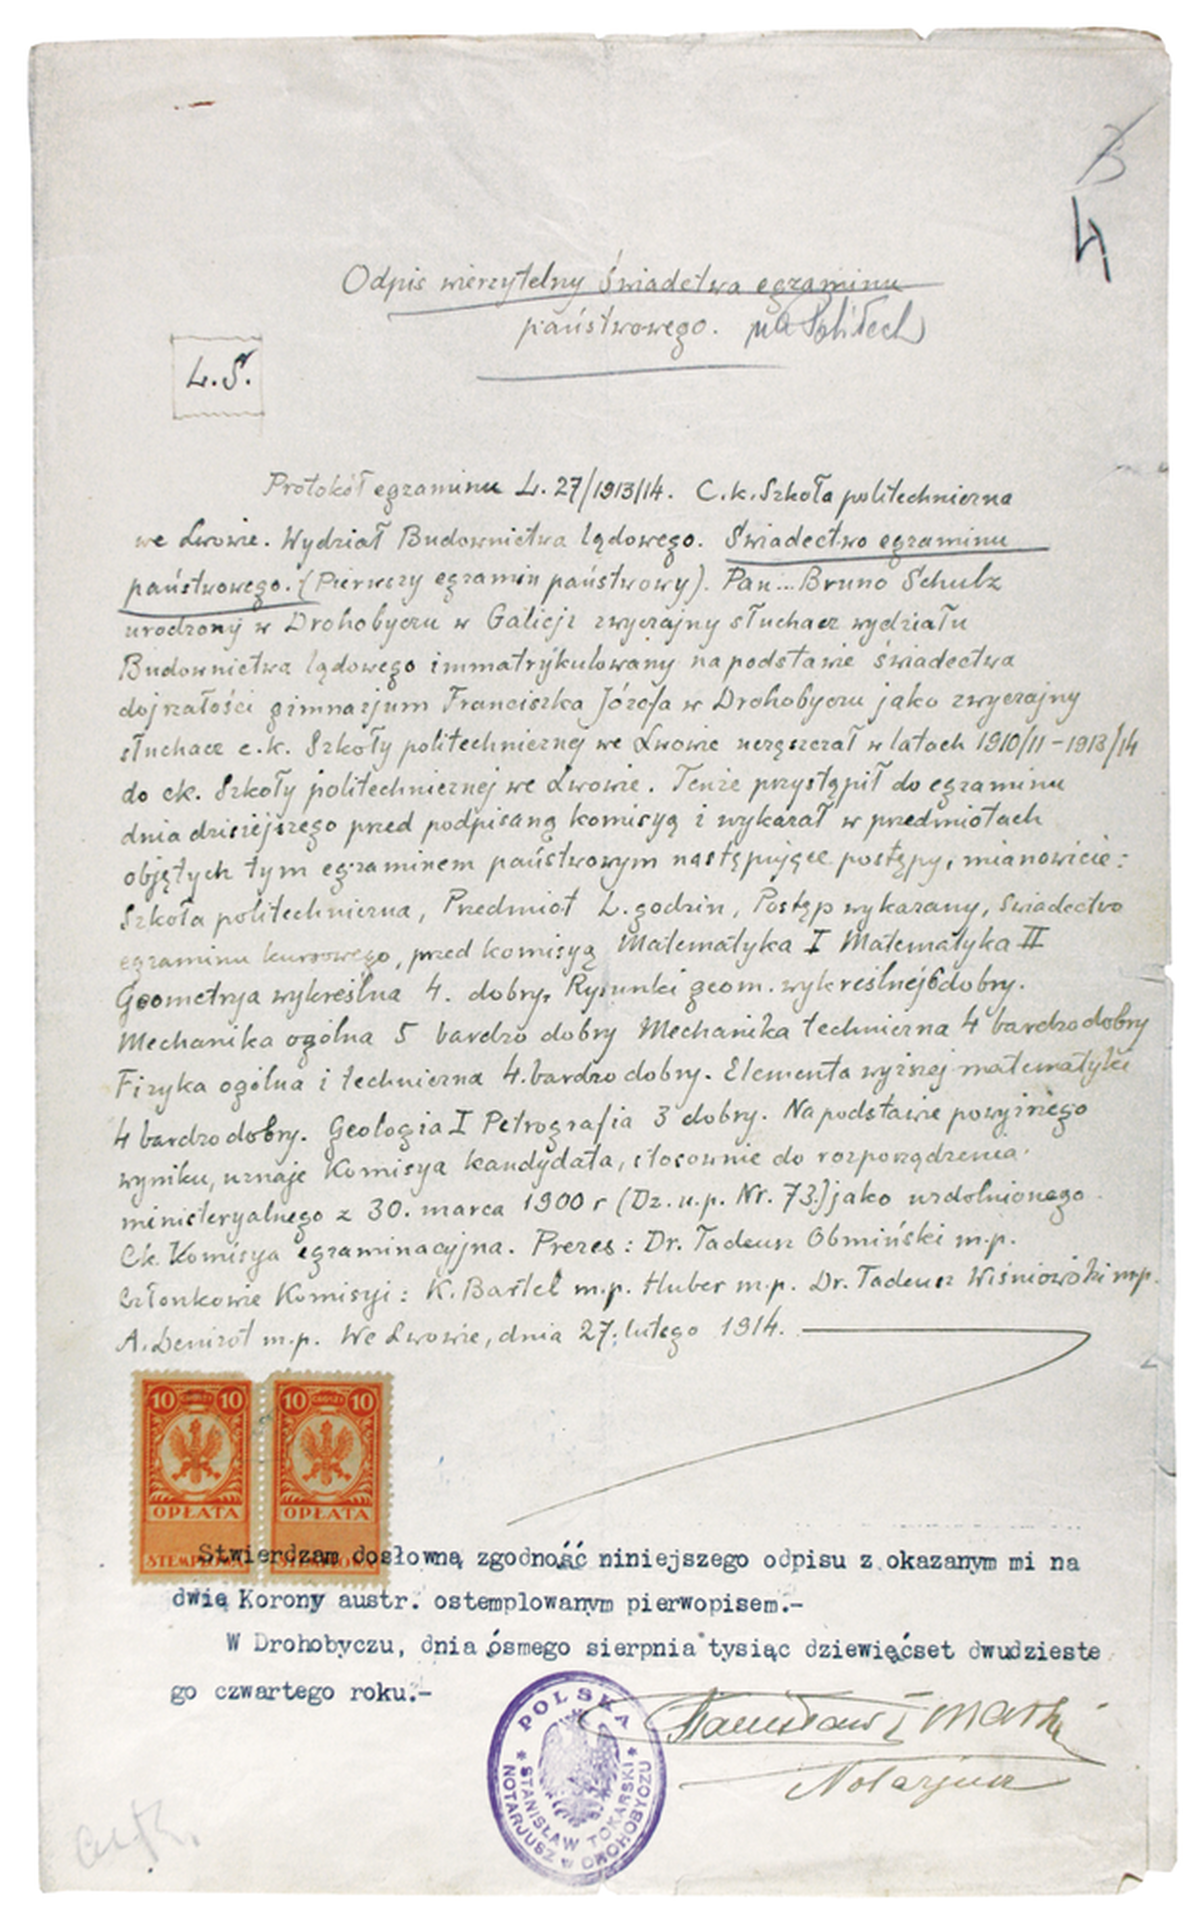 Odpis wierzytelny świadectwa egzaminu państwowego z 1924 roku